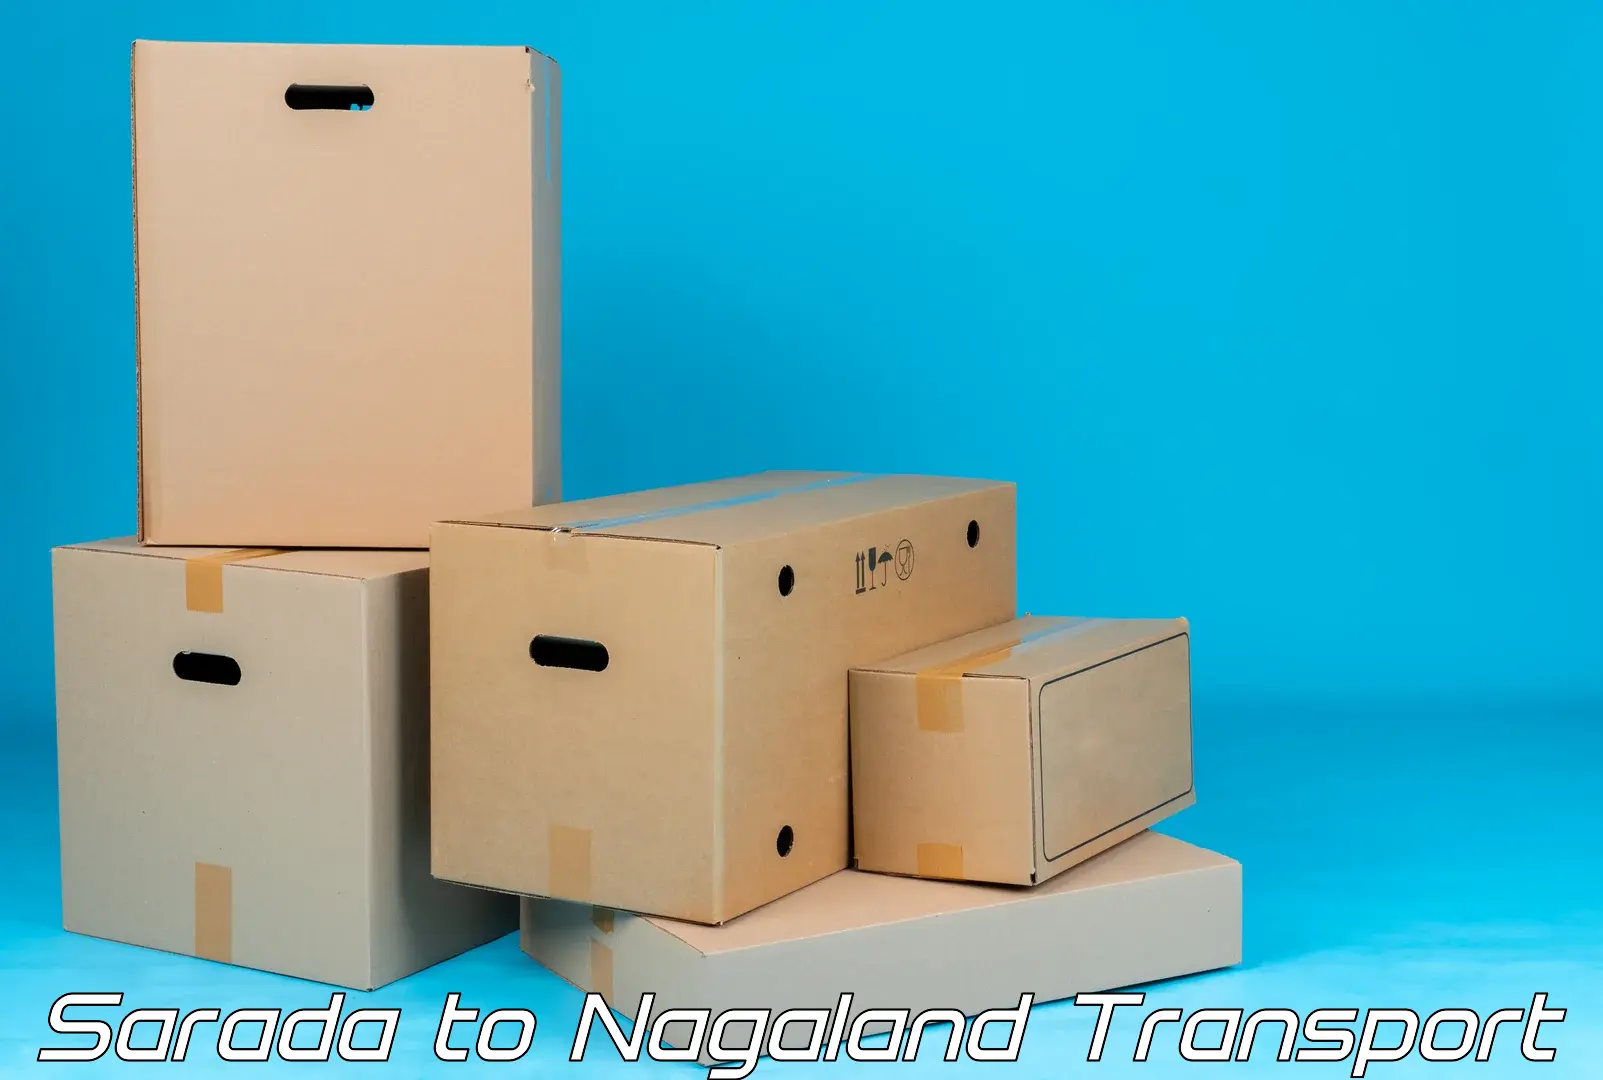 Commercial transport service Sarada to Nagaland